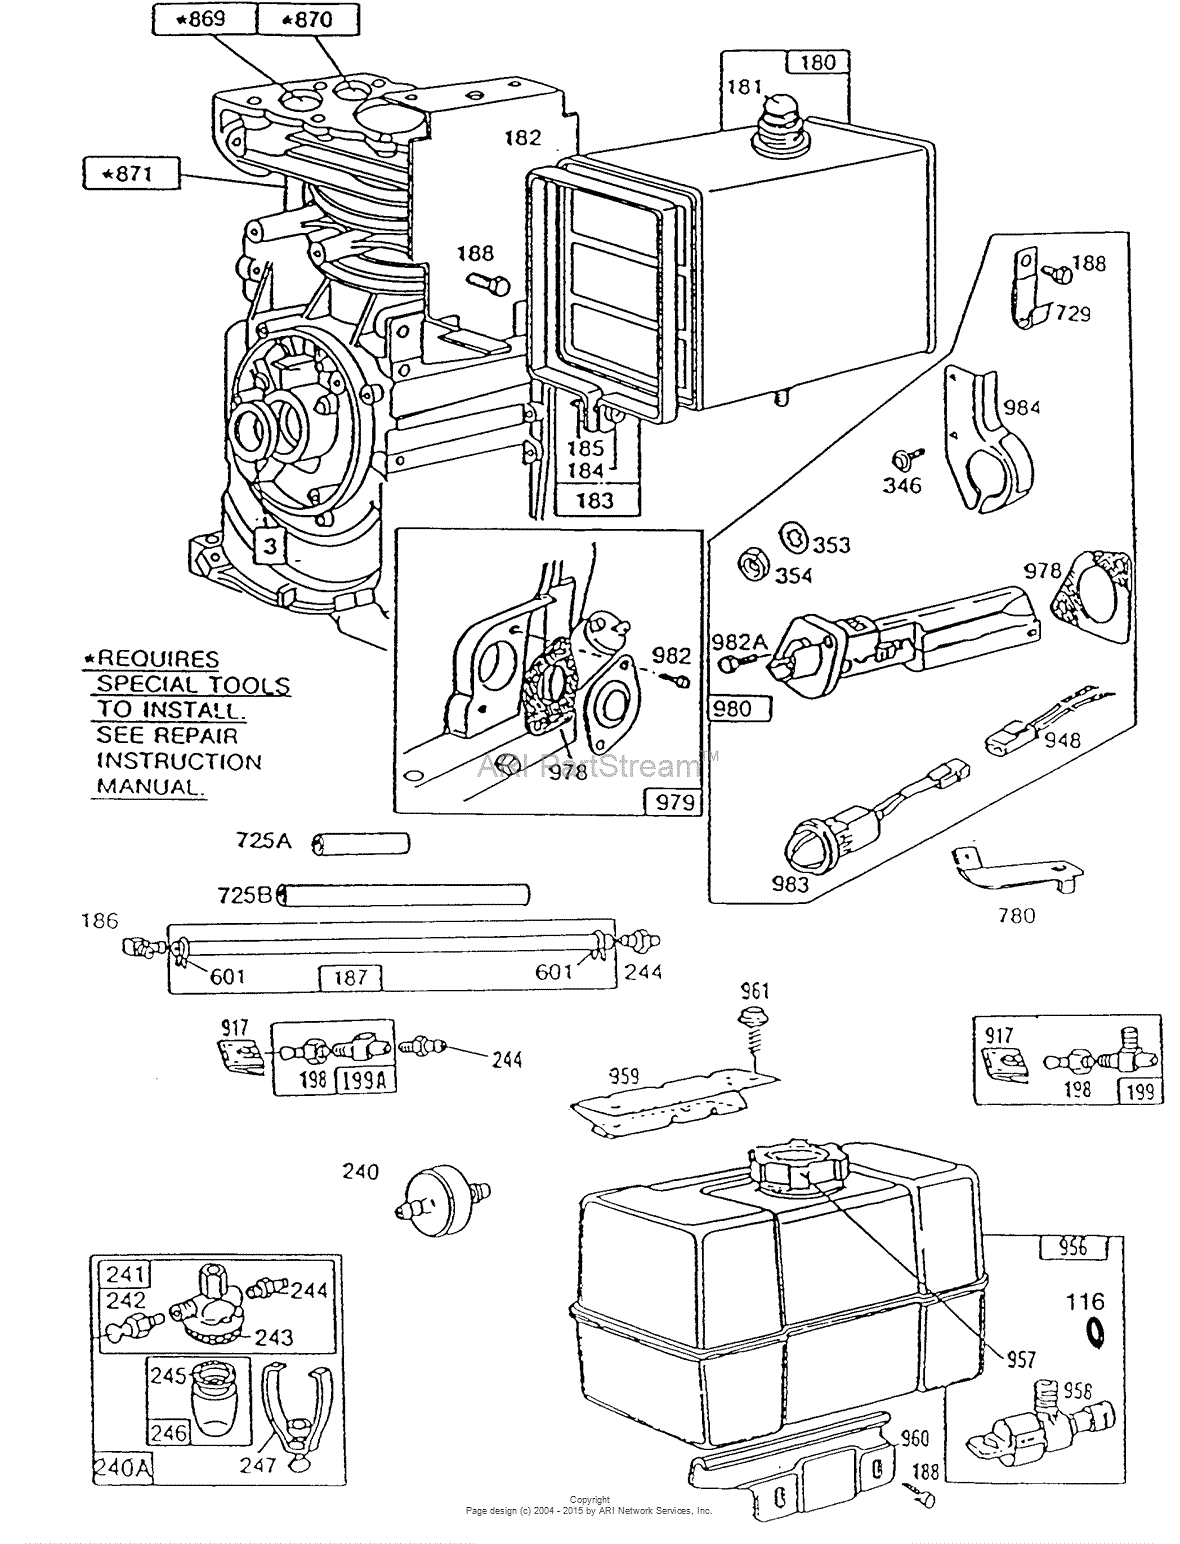 195432 Briggs And Stratton Manual